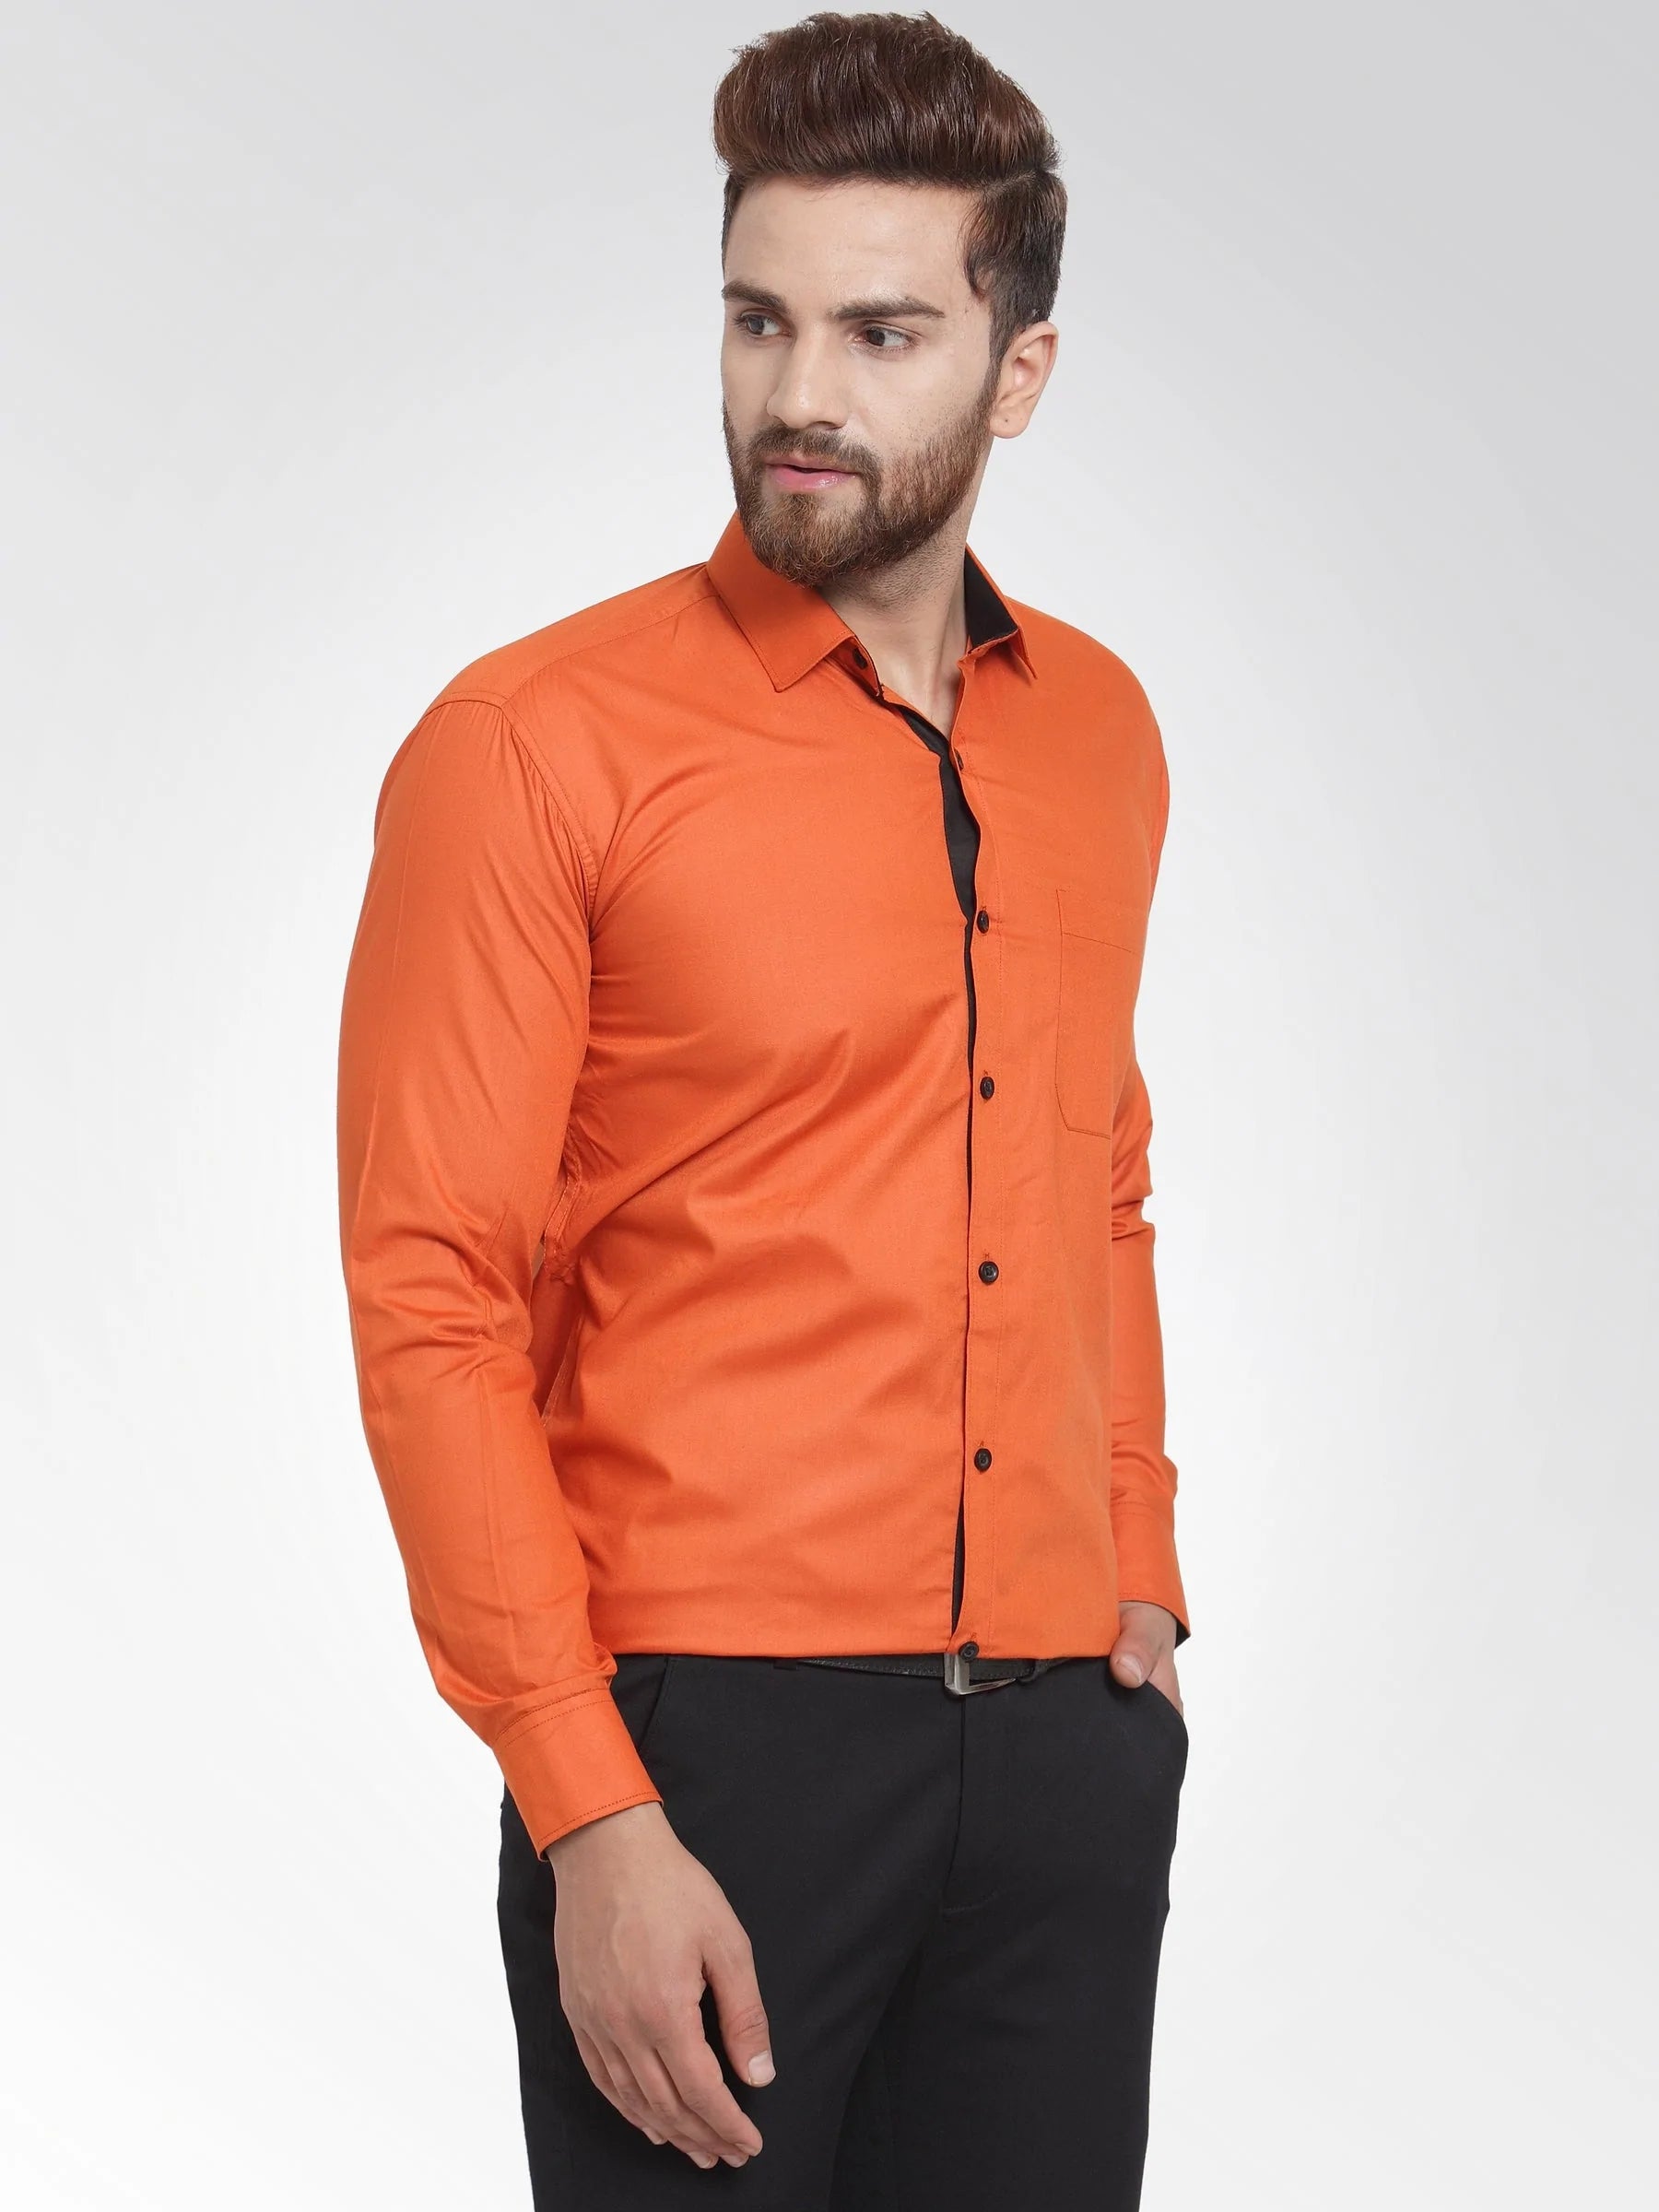 Jainish Dark Orange Formal Shirt with black detailing ( SF 411DO )